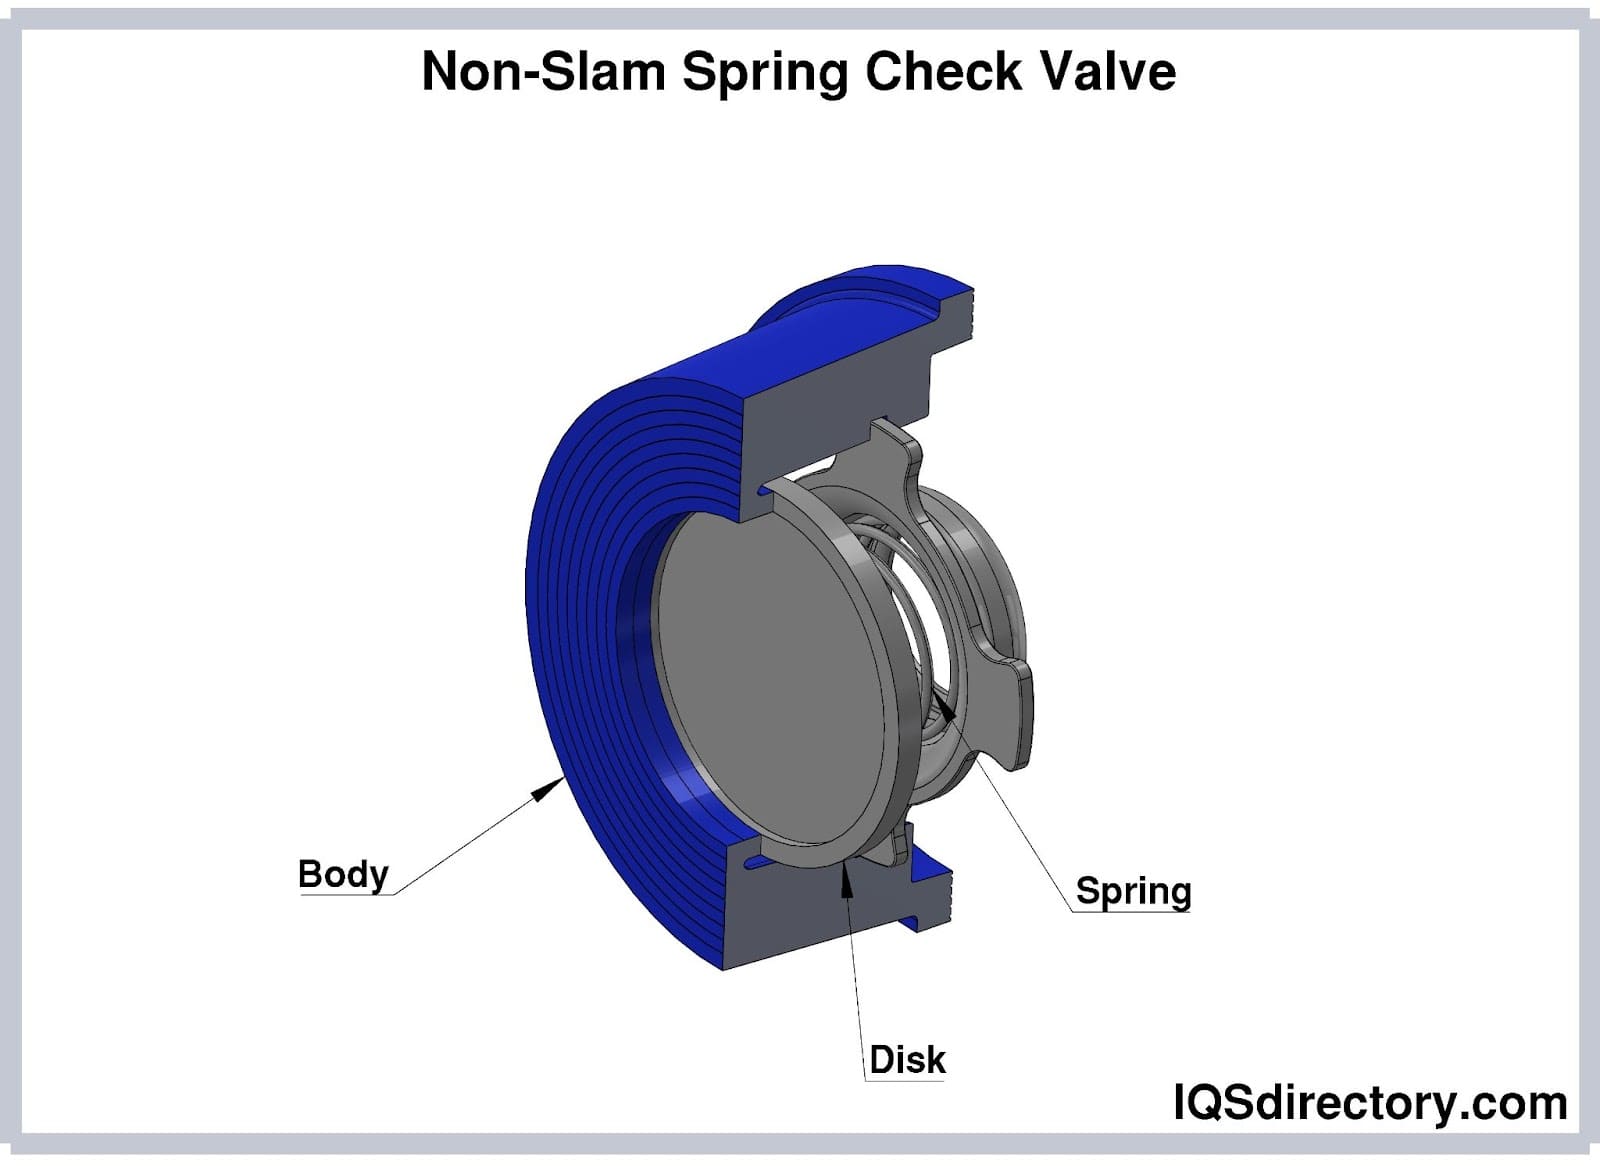 Non-Slam Spring Check Valve